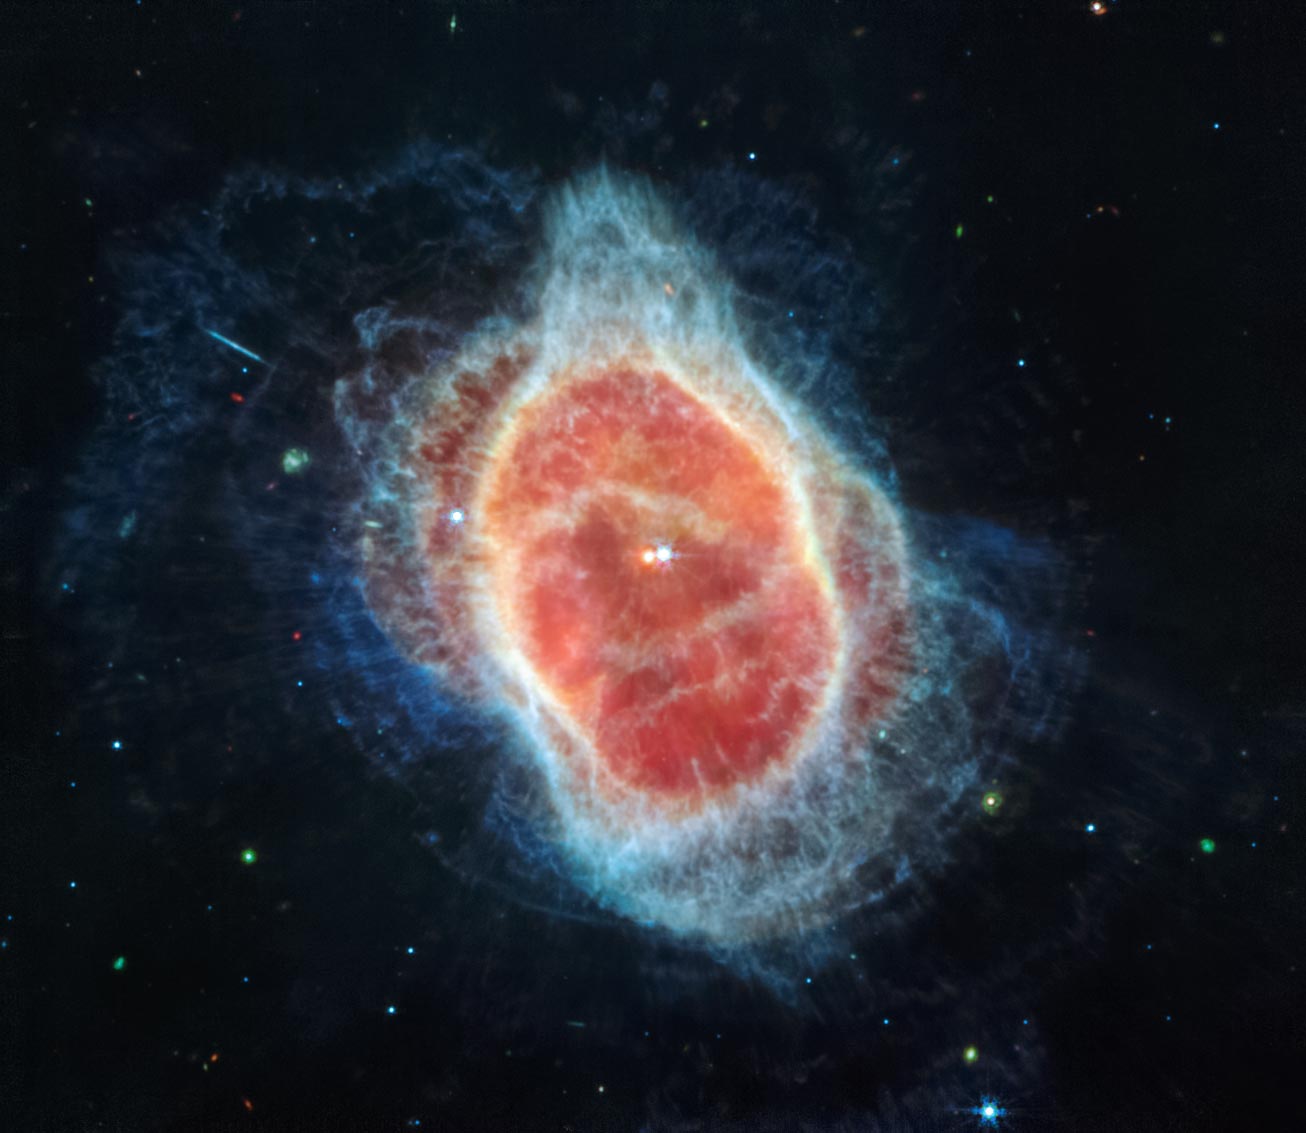 새로운 Webb 망원경 이미지는 별의 죽음의 장면을 보여줍니다